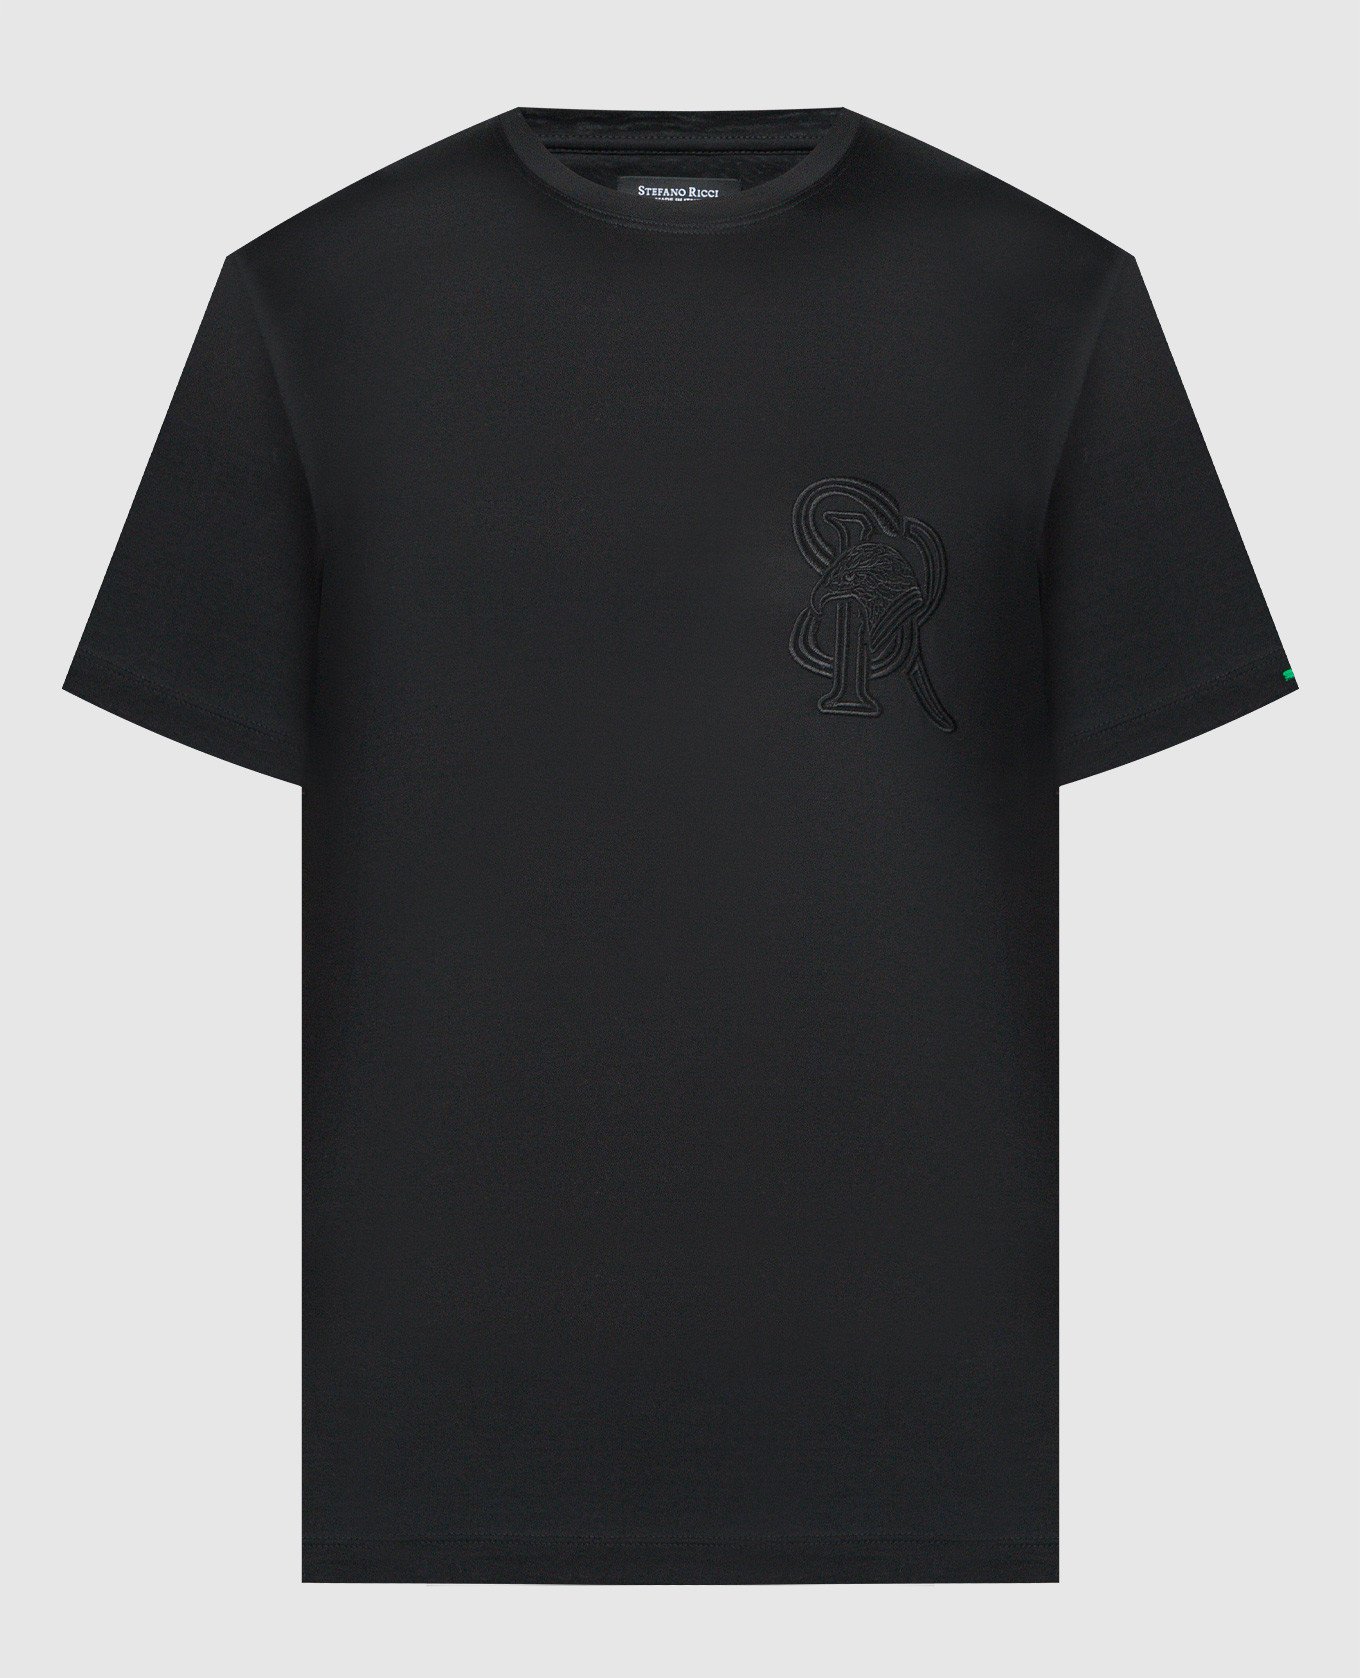 Черная футболка с вышивкой монограмм логотипа